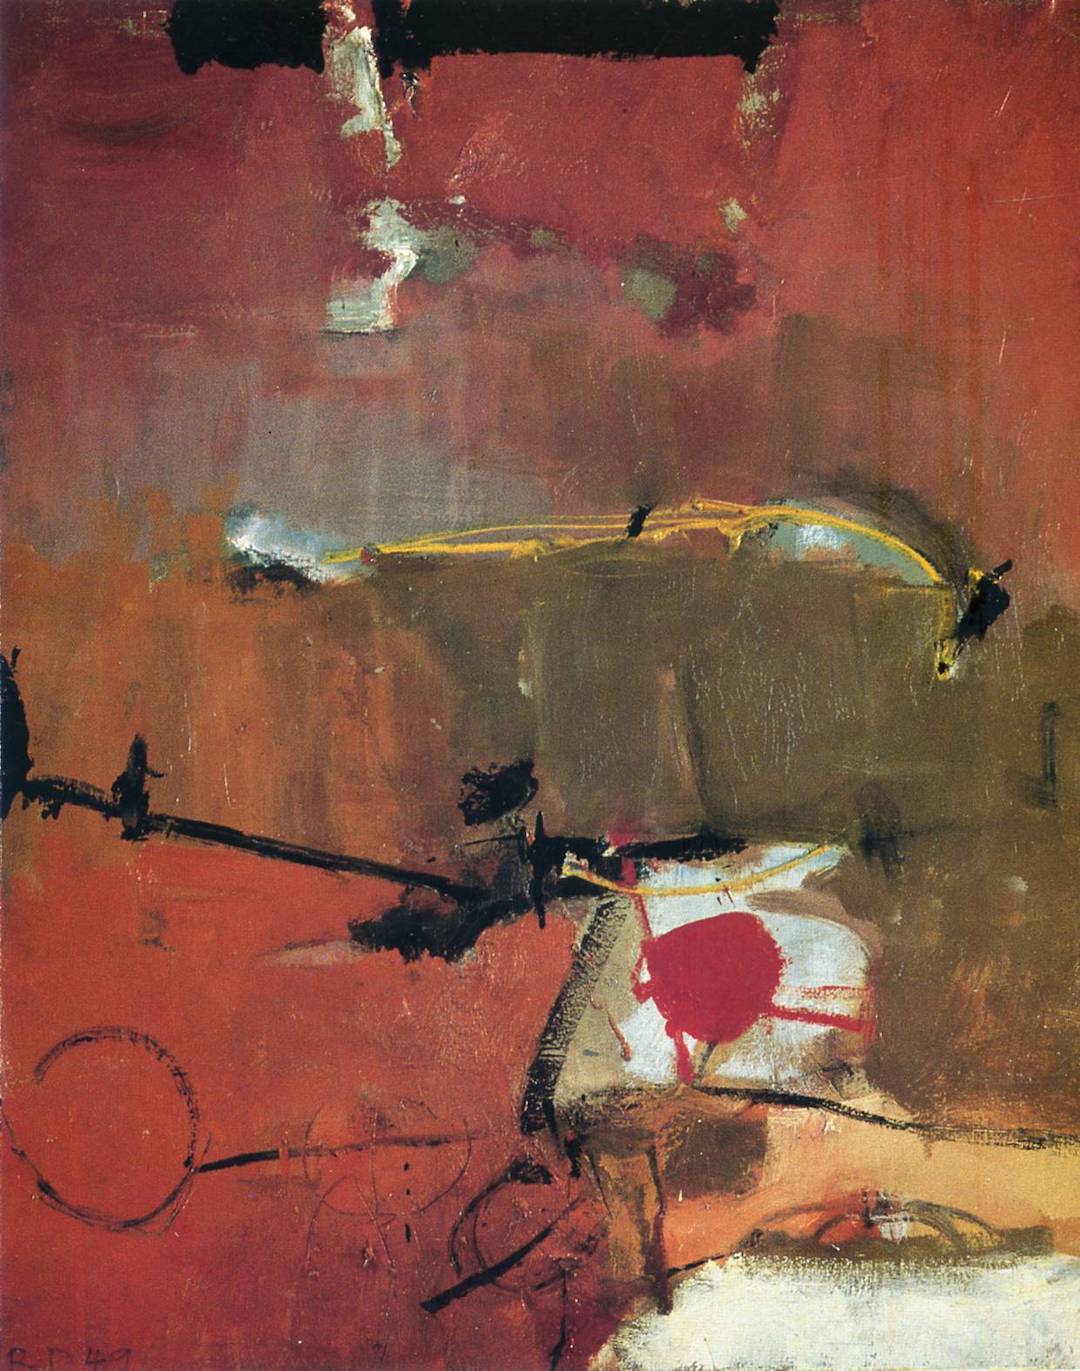 Richard Diebenkorn, Untitled, 1949